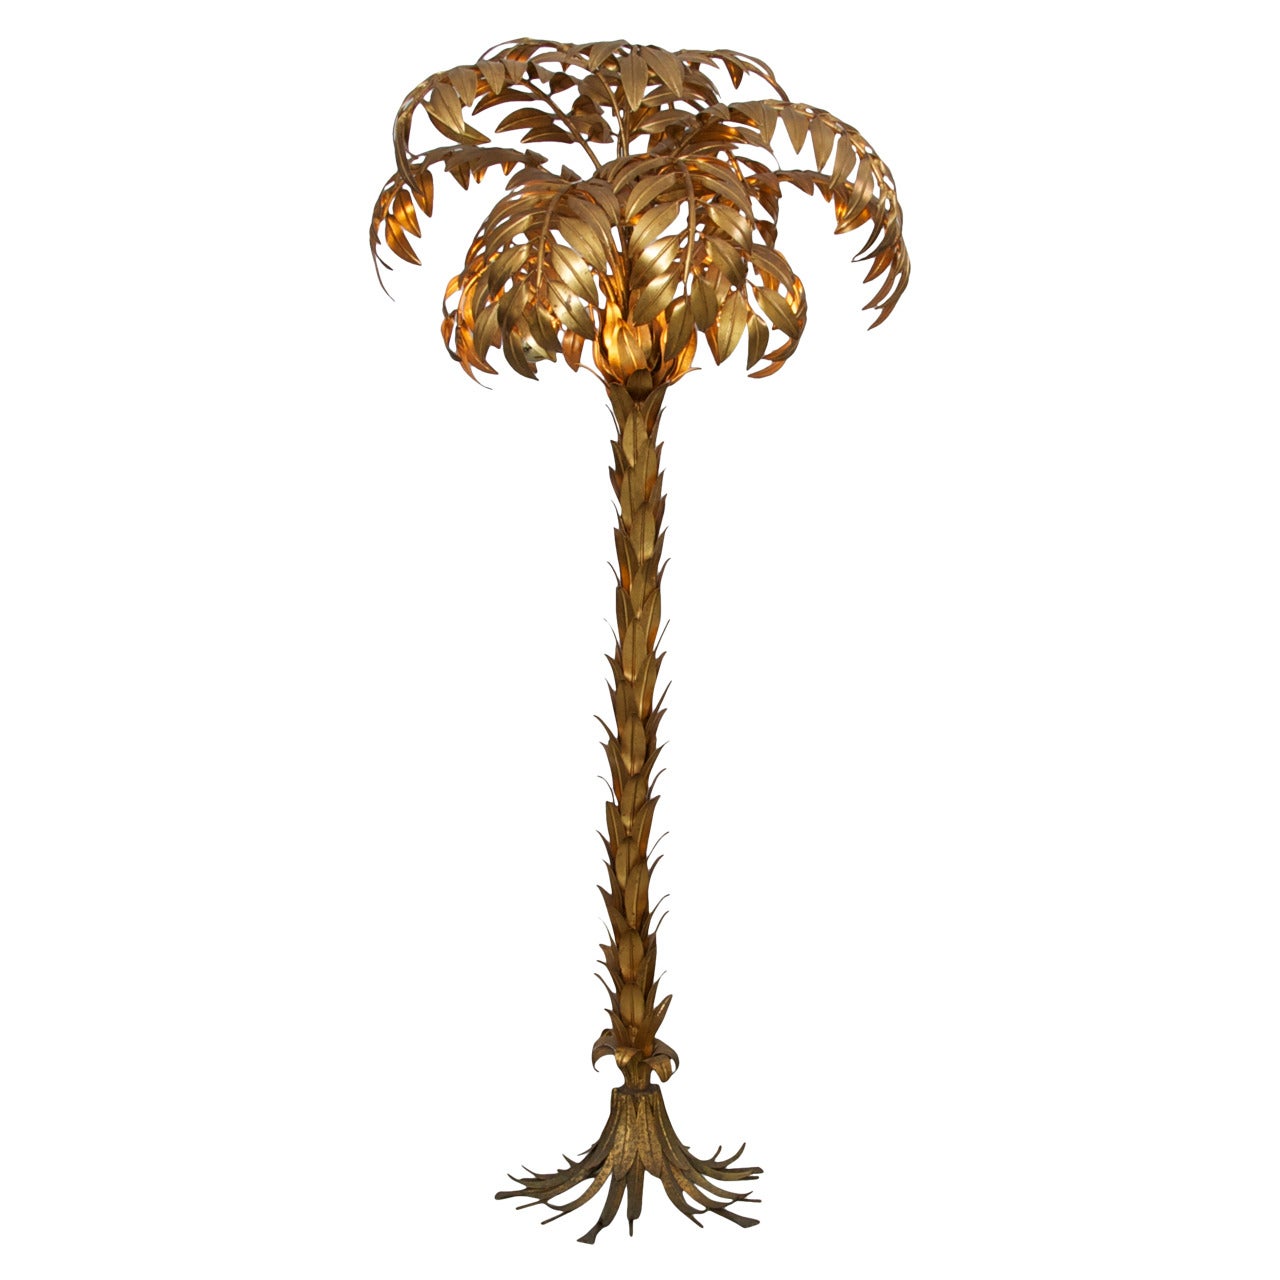 Huge Gilt Metal Palm Tree Floor Lamp by Hans Kögl